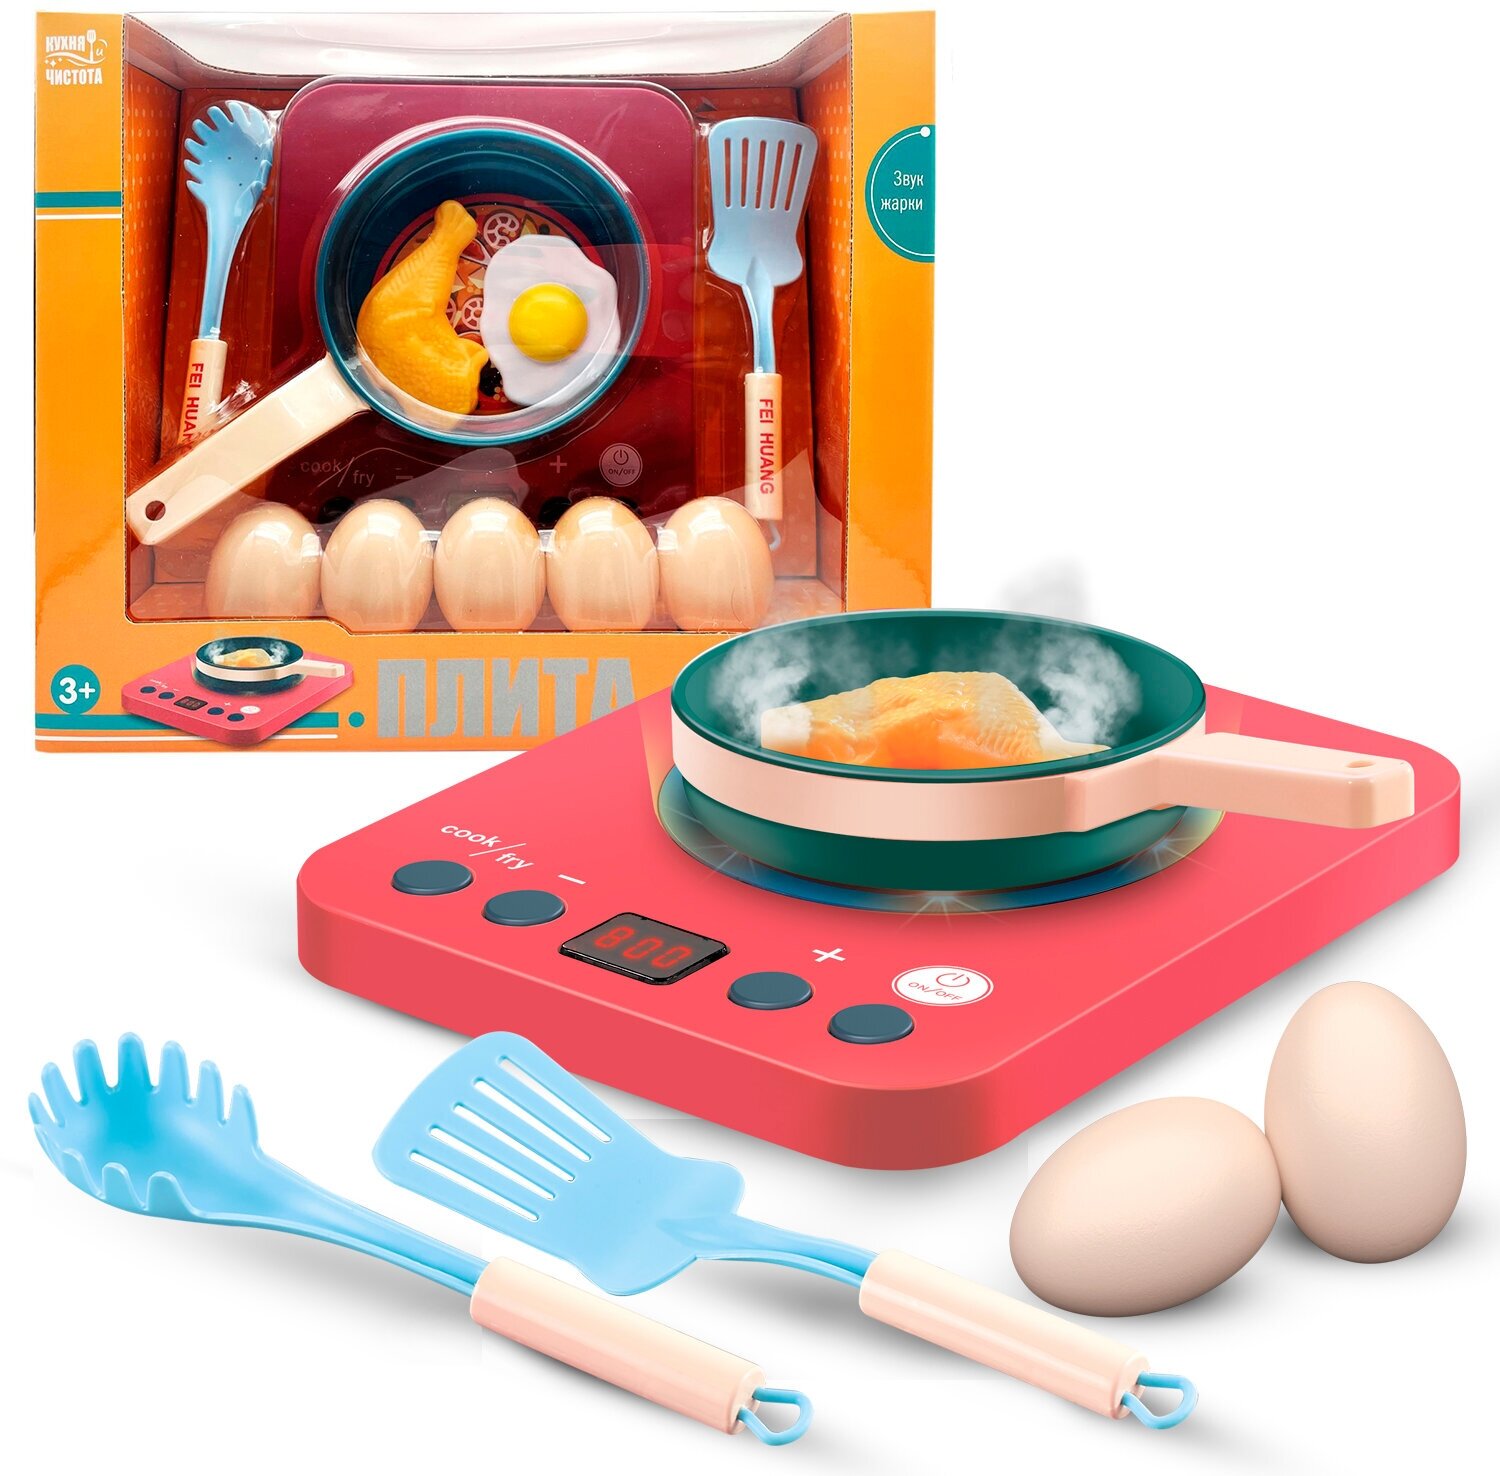 Набор игровой, набор для девочек Bondibon плита со сковородой и набором продуктов, звук Кухня и Чистота